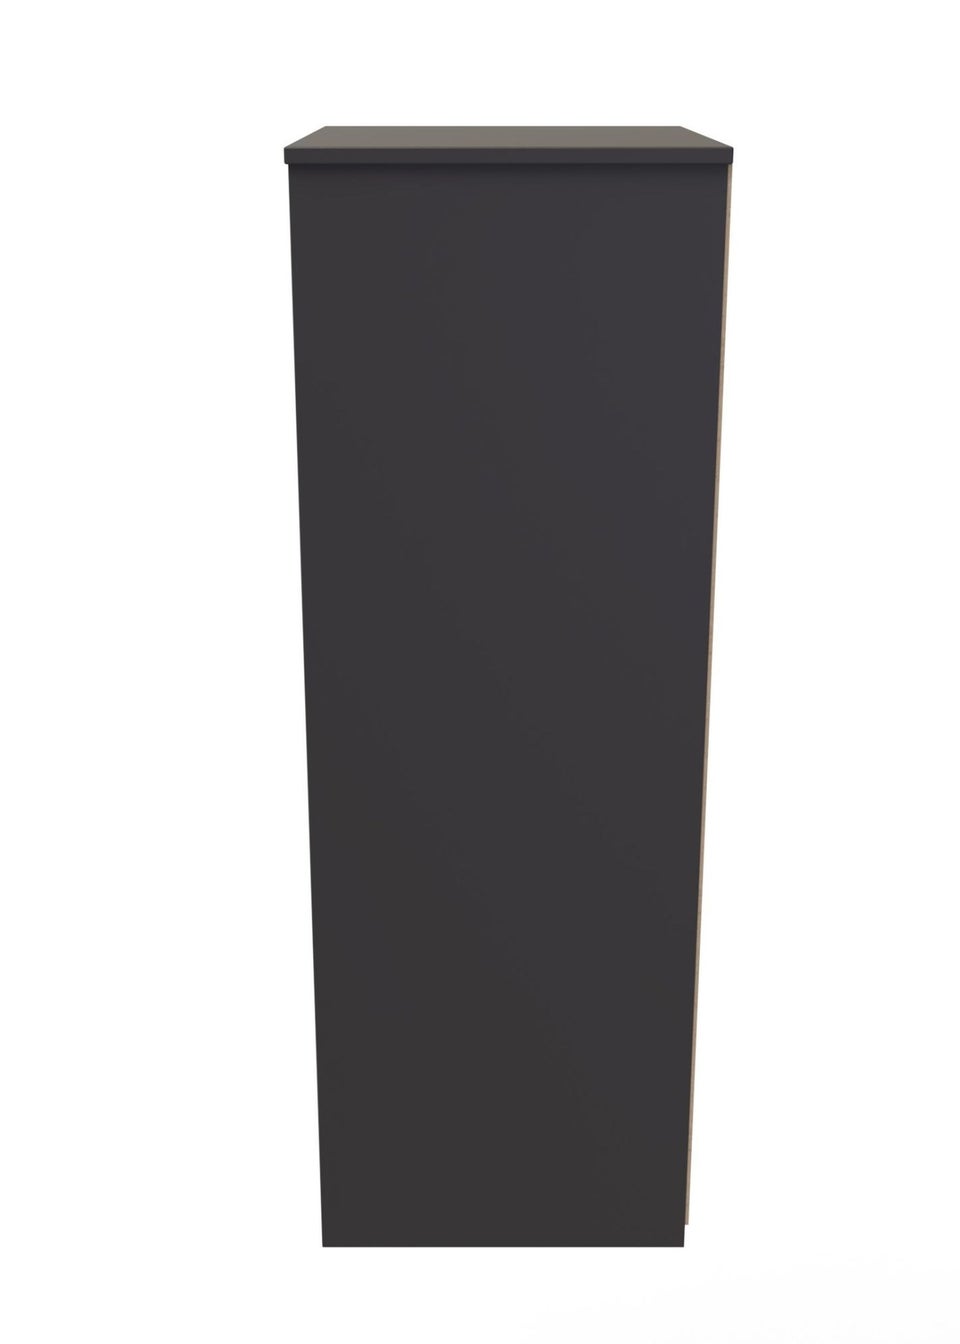 Swift Nevada 5 Drawer Tallboy (113cm x 40cm x 45cm)